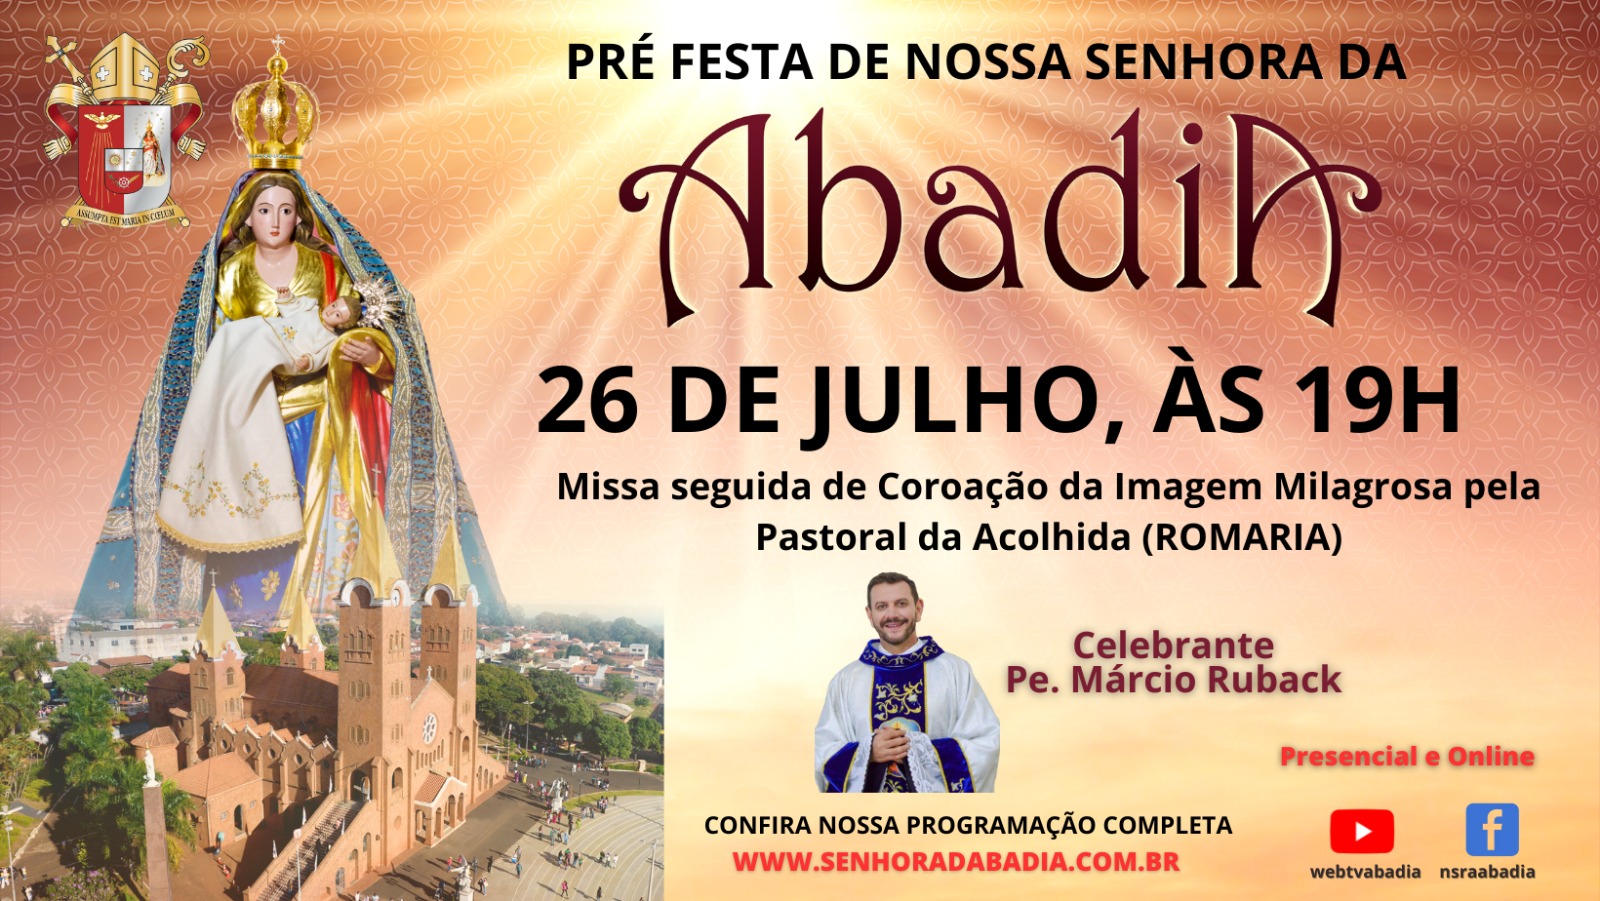 Pre Festa de Nossa Senhora da Abadia - Missa com Pe. Márcio Ruback - 26/07